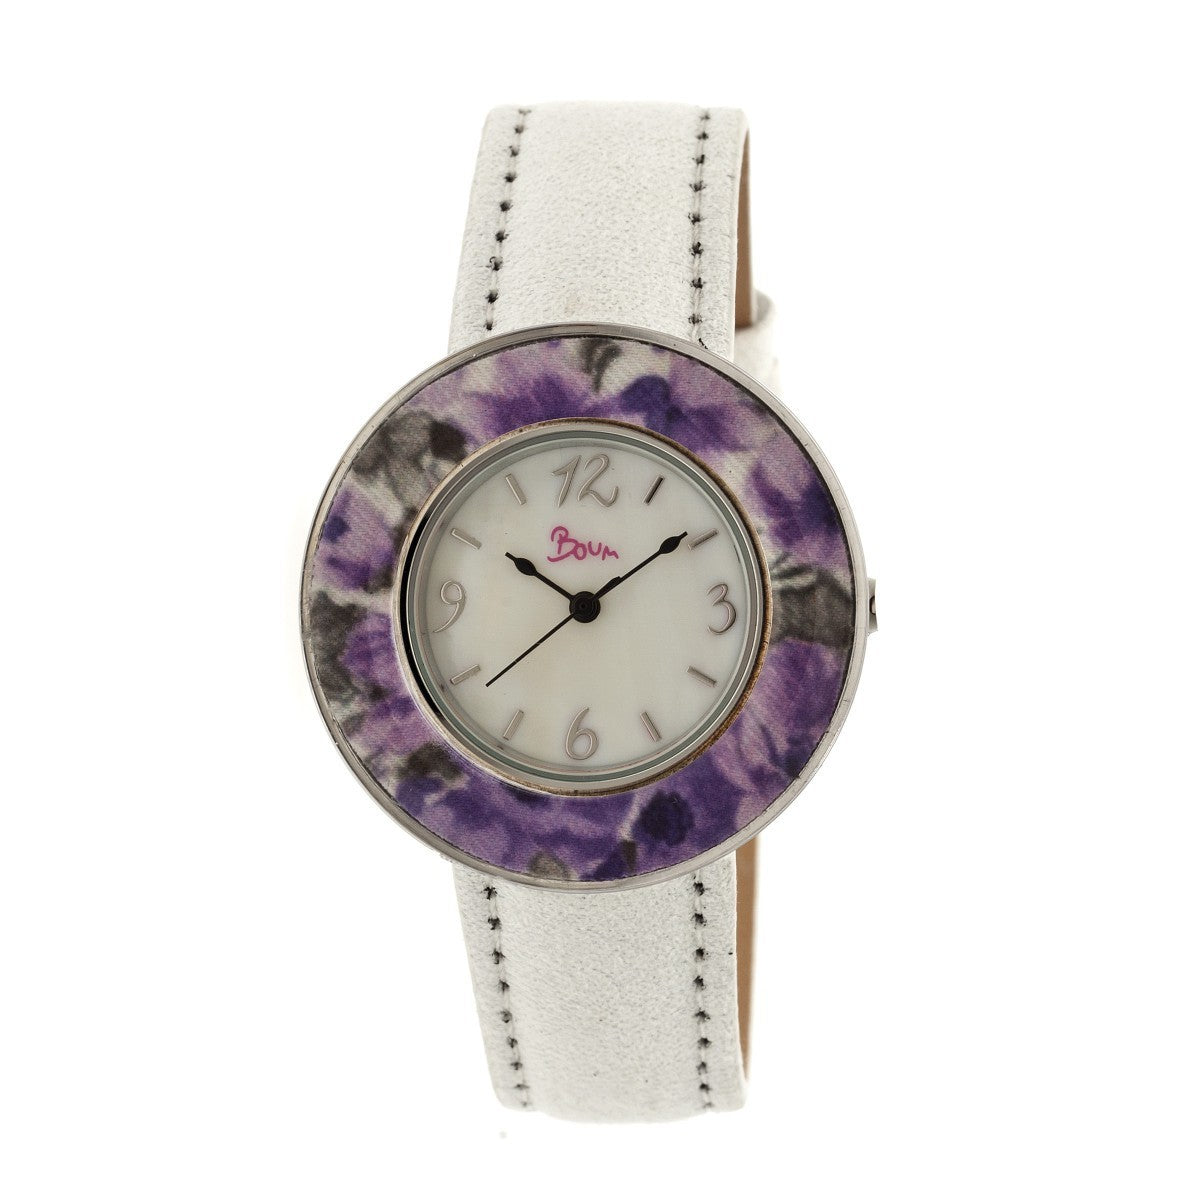 Boum Bouquet Floral-Ring Leather-Band Ladies Watch - White/Purple - BOUBM2804